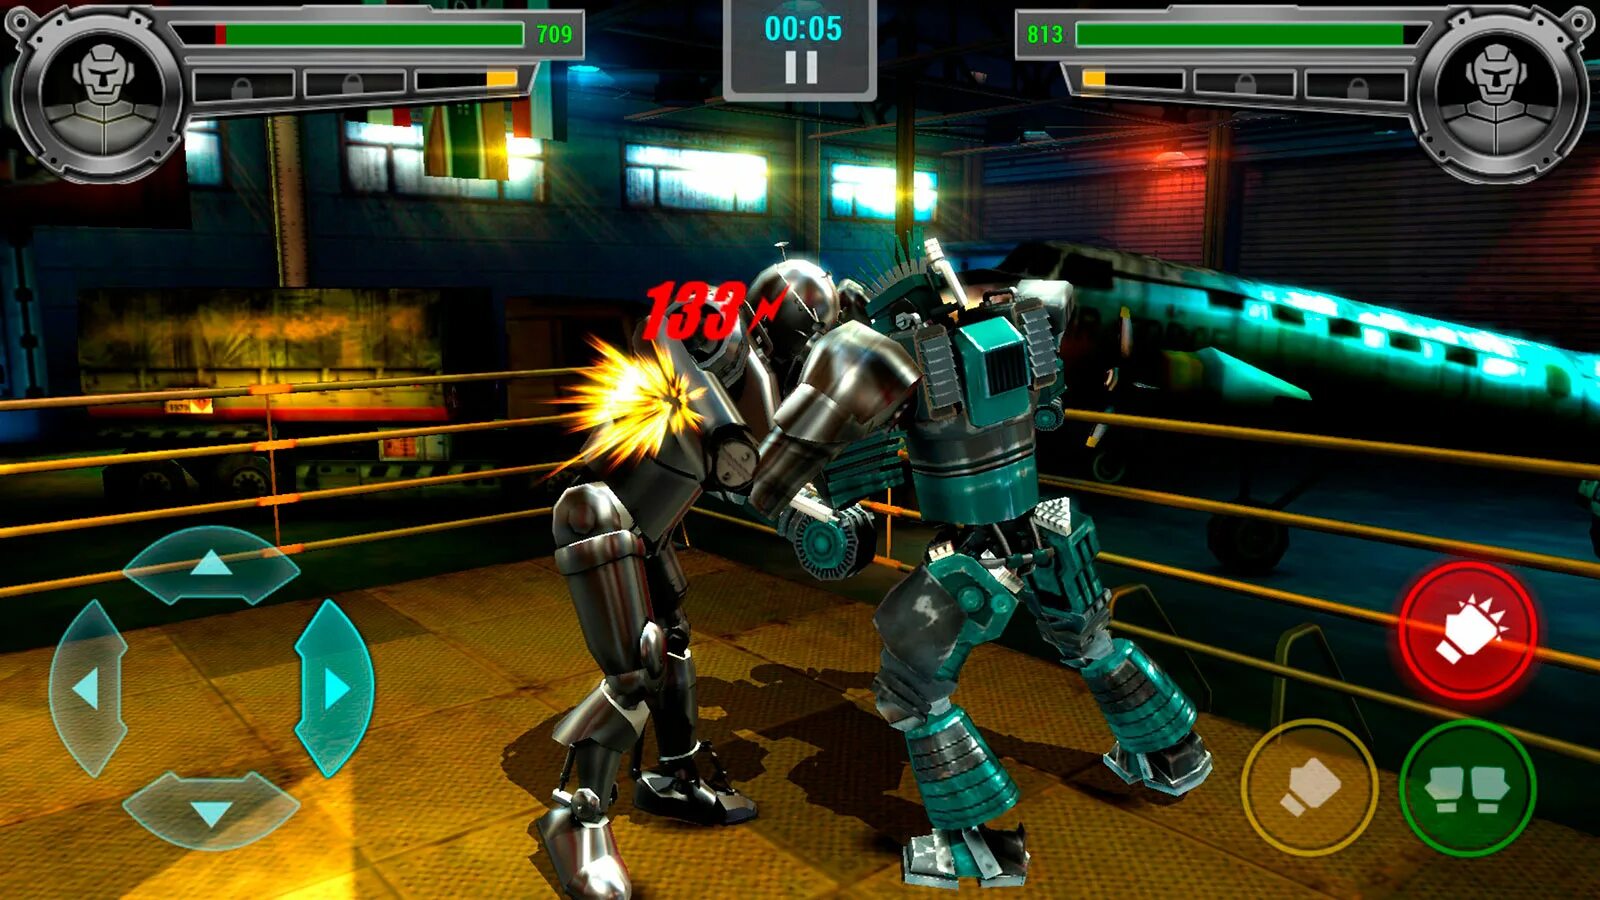 Real Steel Robot Boxing игра. Живая сталь игра Boxing Champions. Real Steel 2 игра. Real Steel игра андроид атом. Взломанные игры живой стали